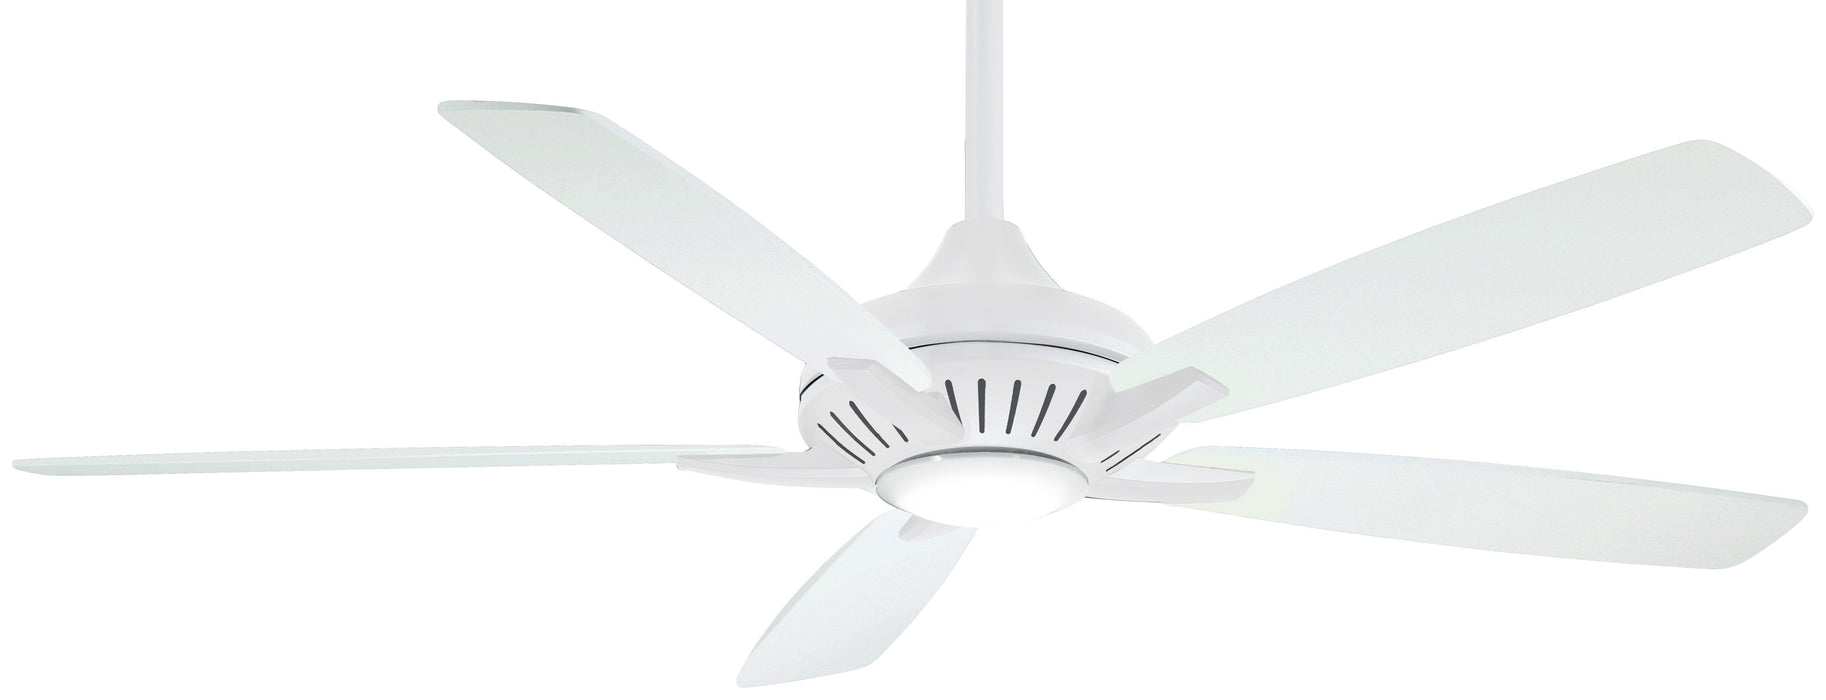 Dyno Xl - LED 60" Ceiling Fan